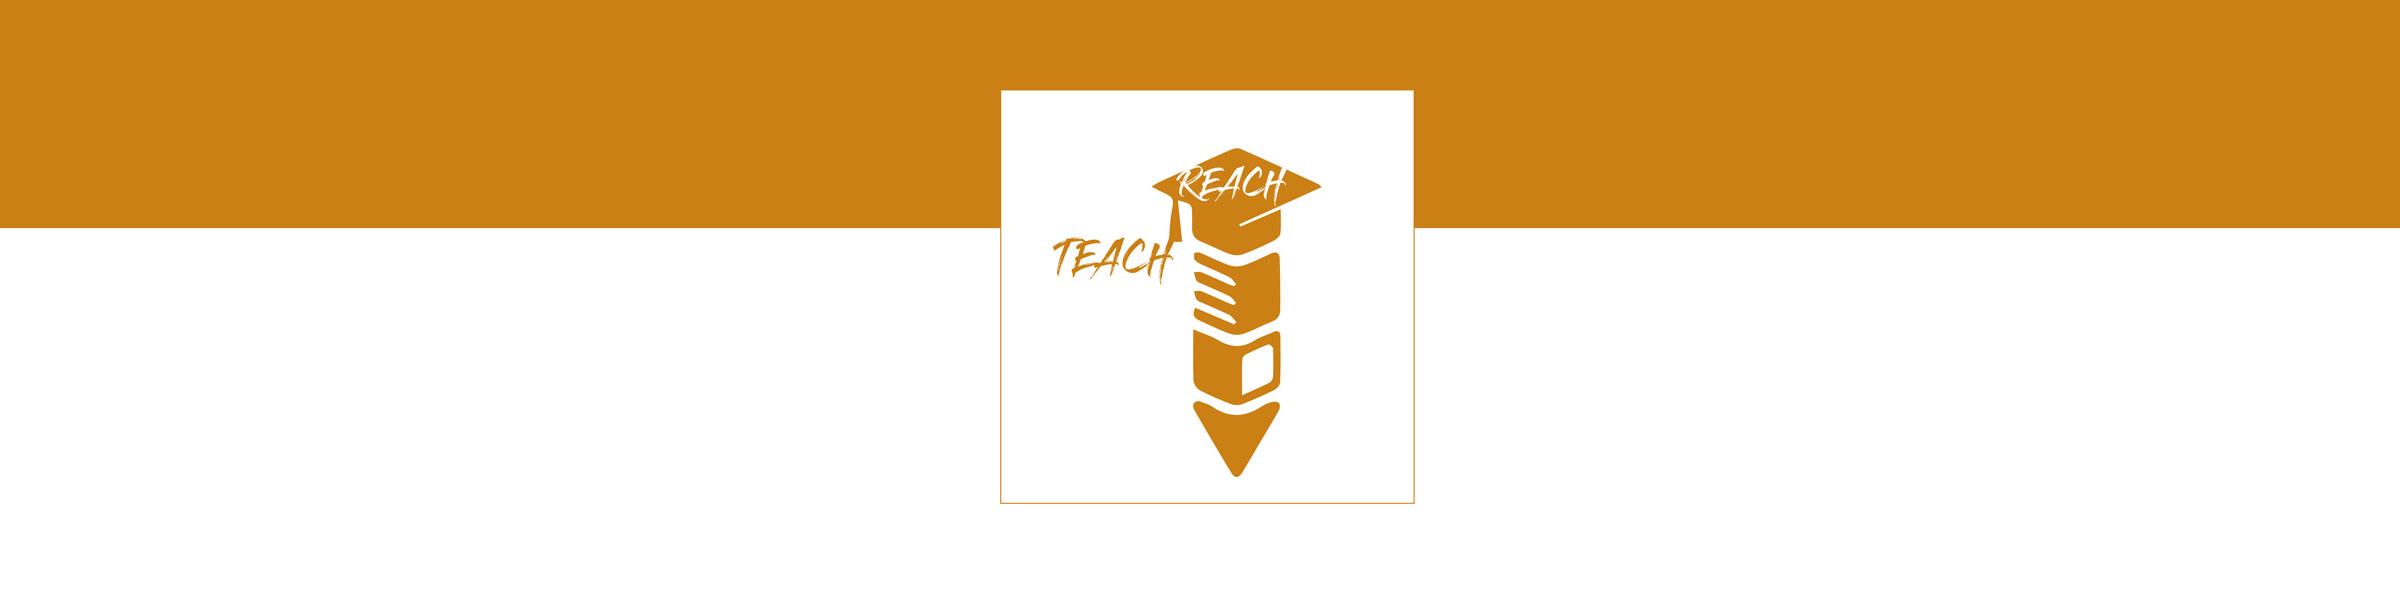 2400x600 Reach Teach banner